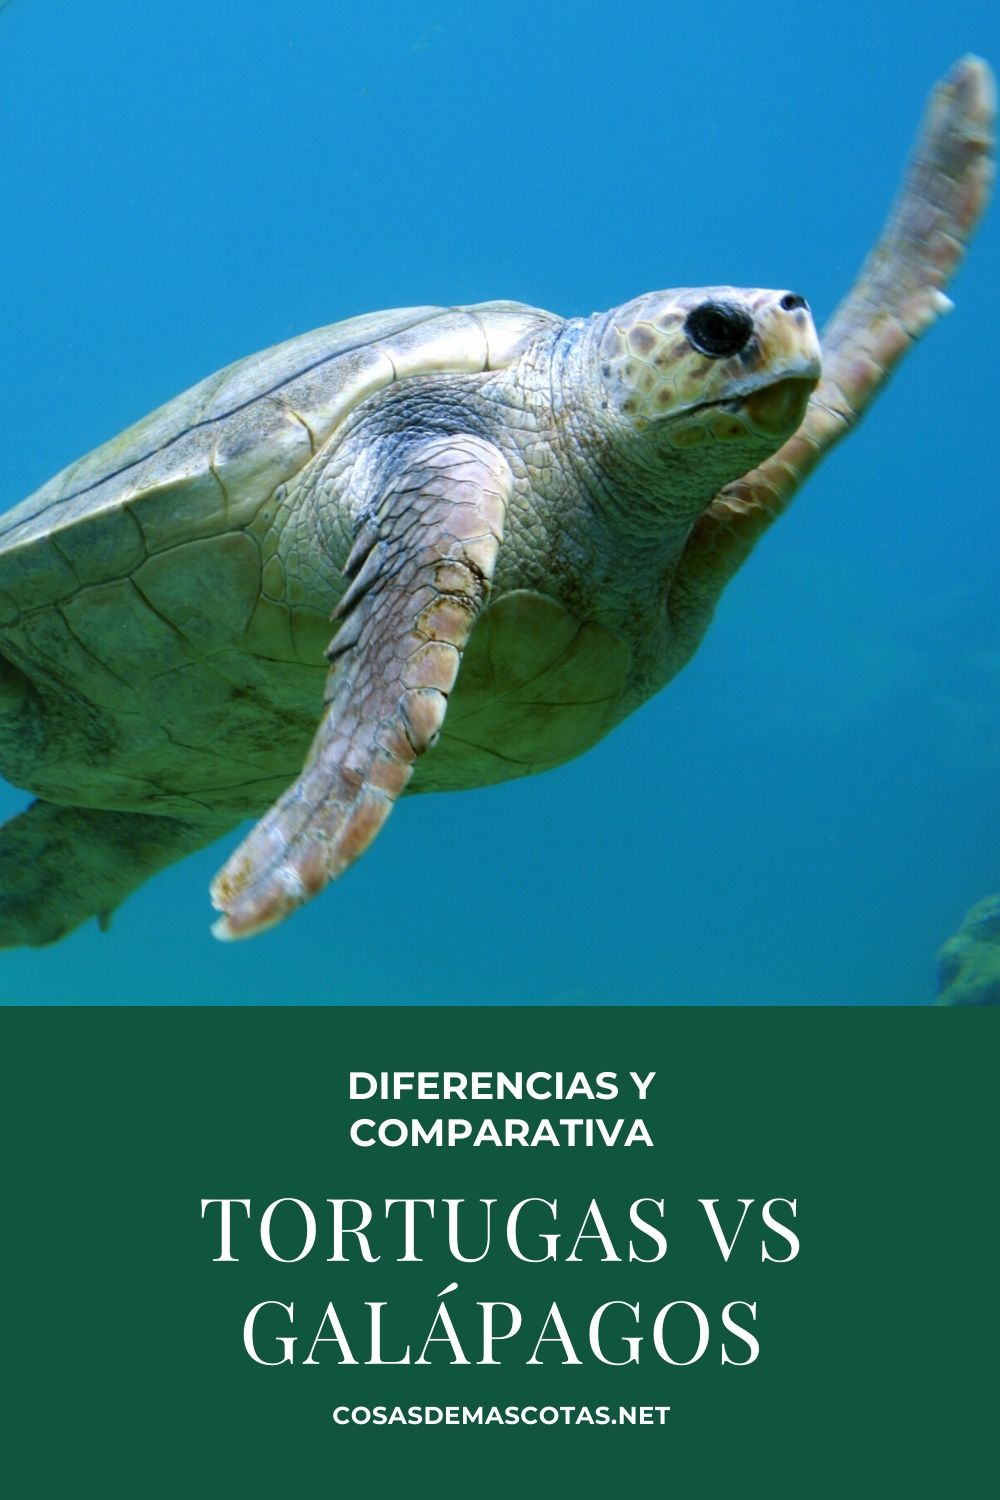 Tortugas vs galápagos: diferencia y comparativa